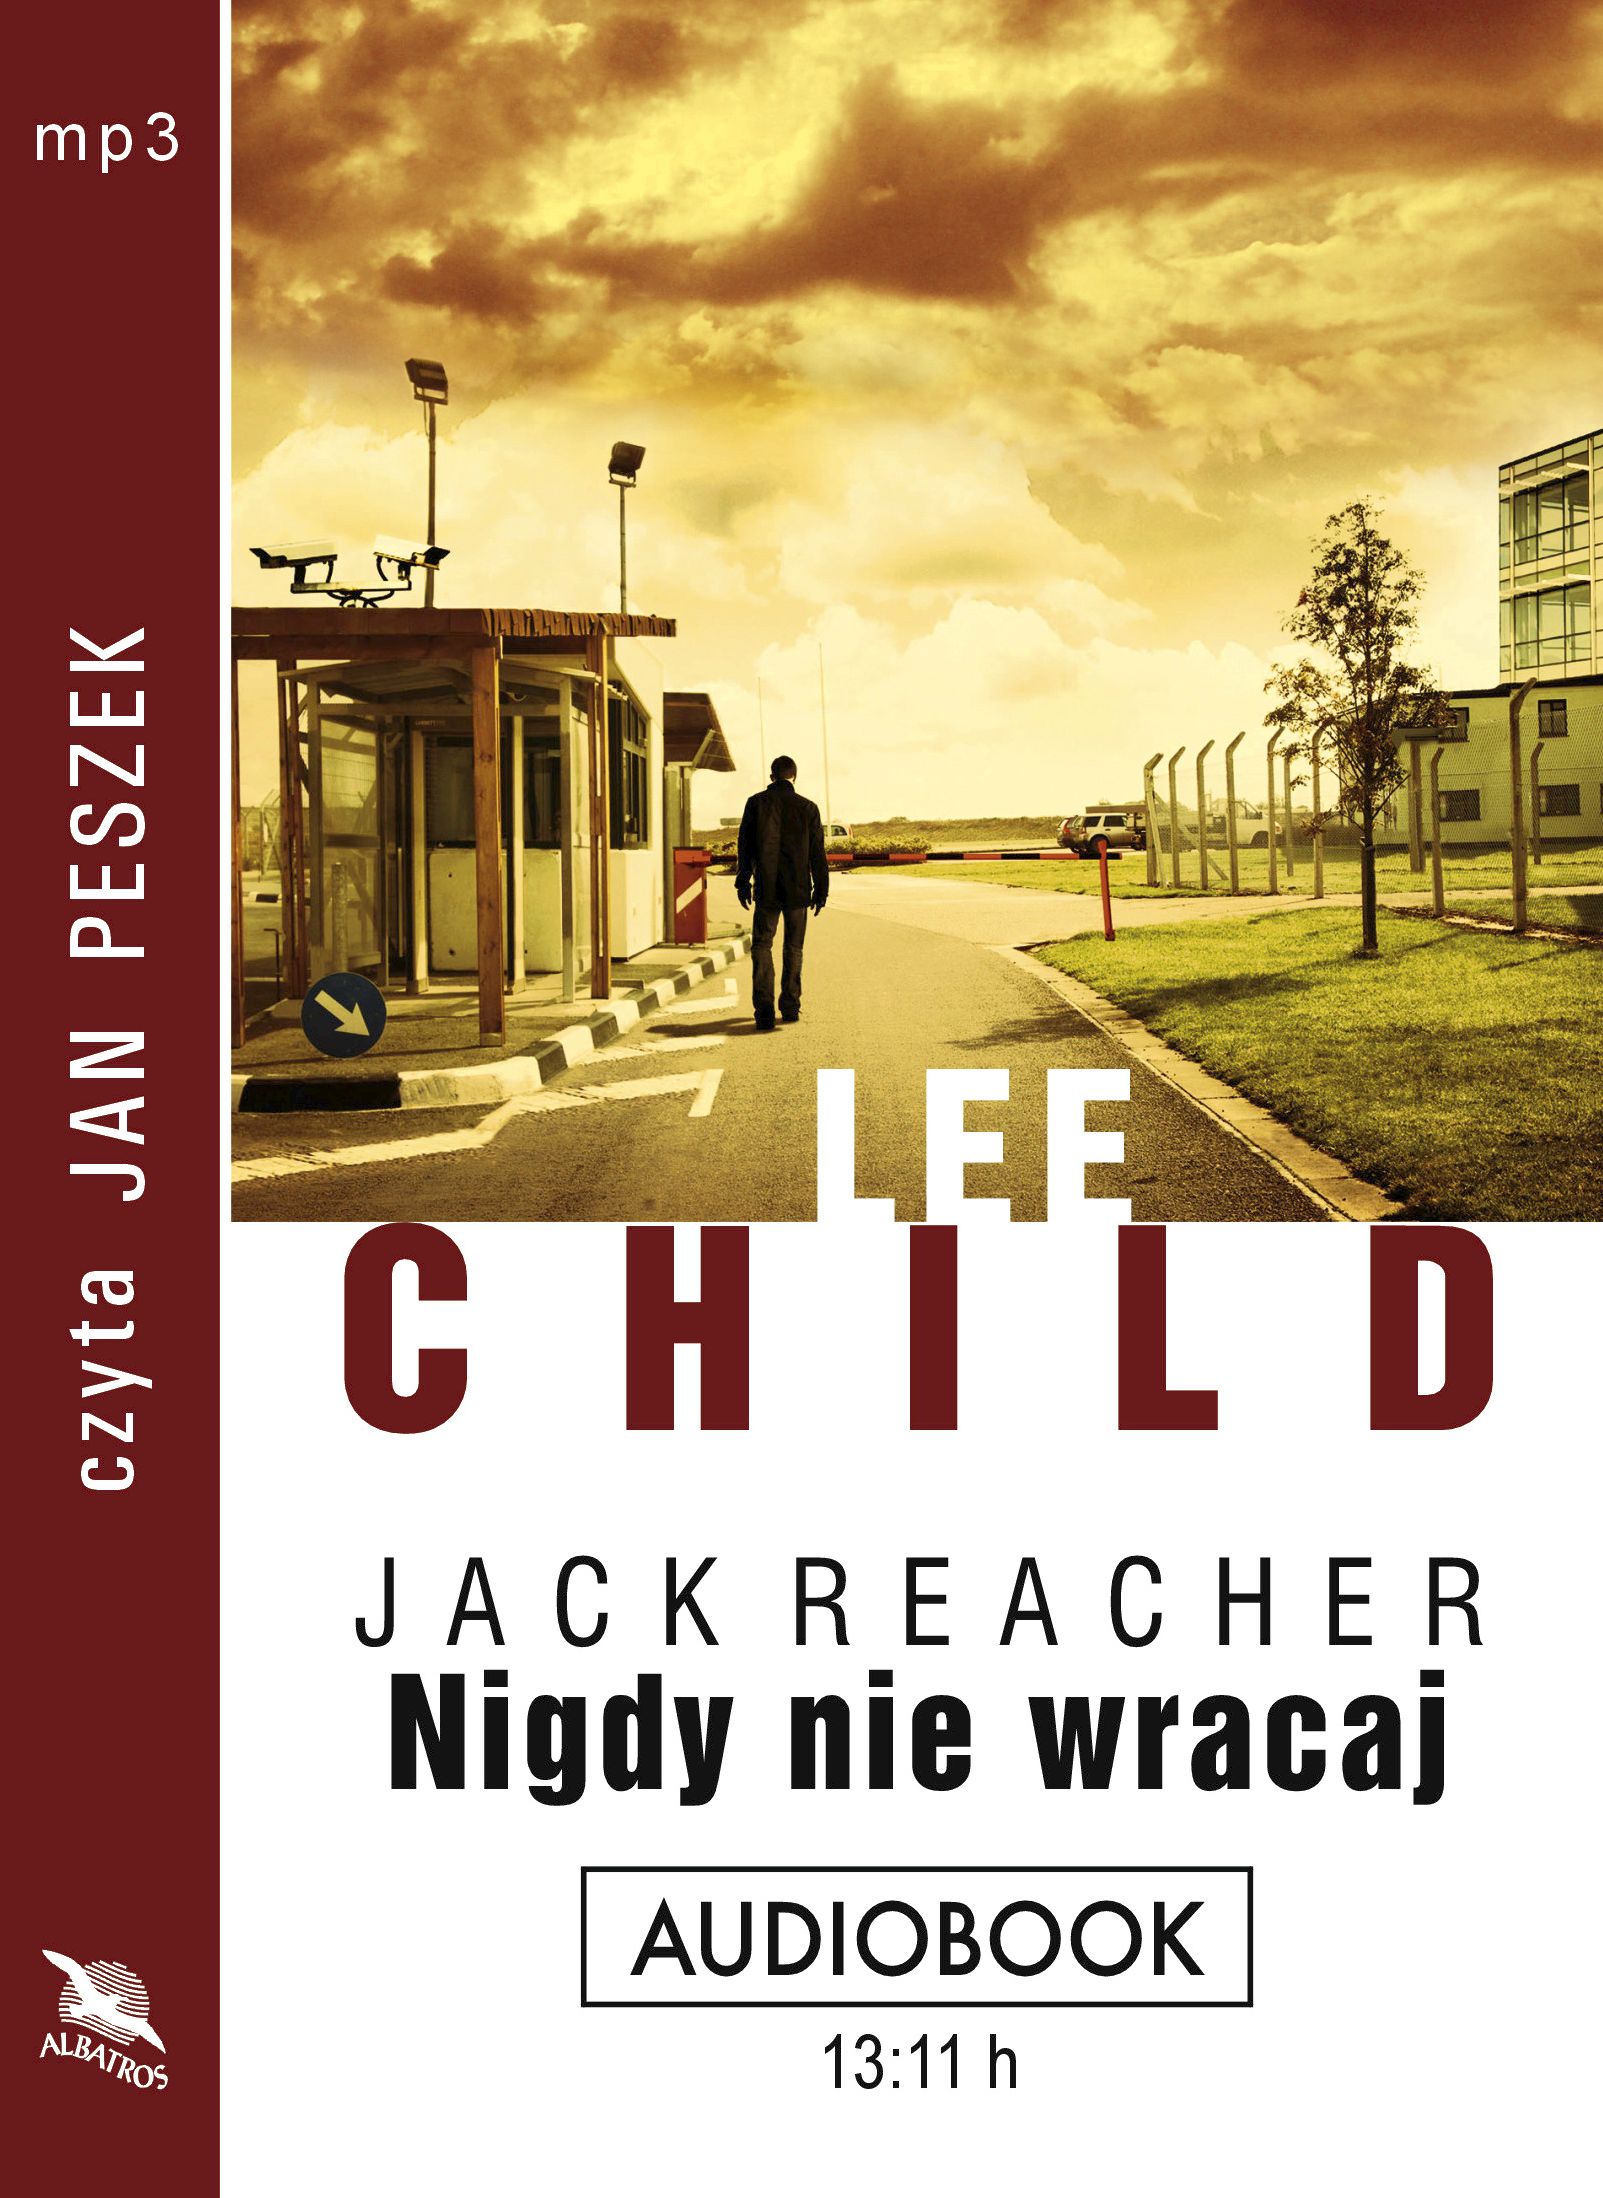 CHILD LEE - JACK REACHER 18. NIGDY NIE WRACAJ